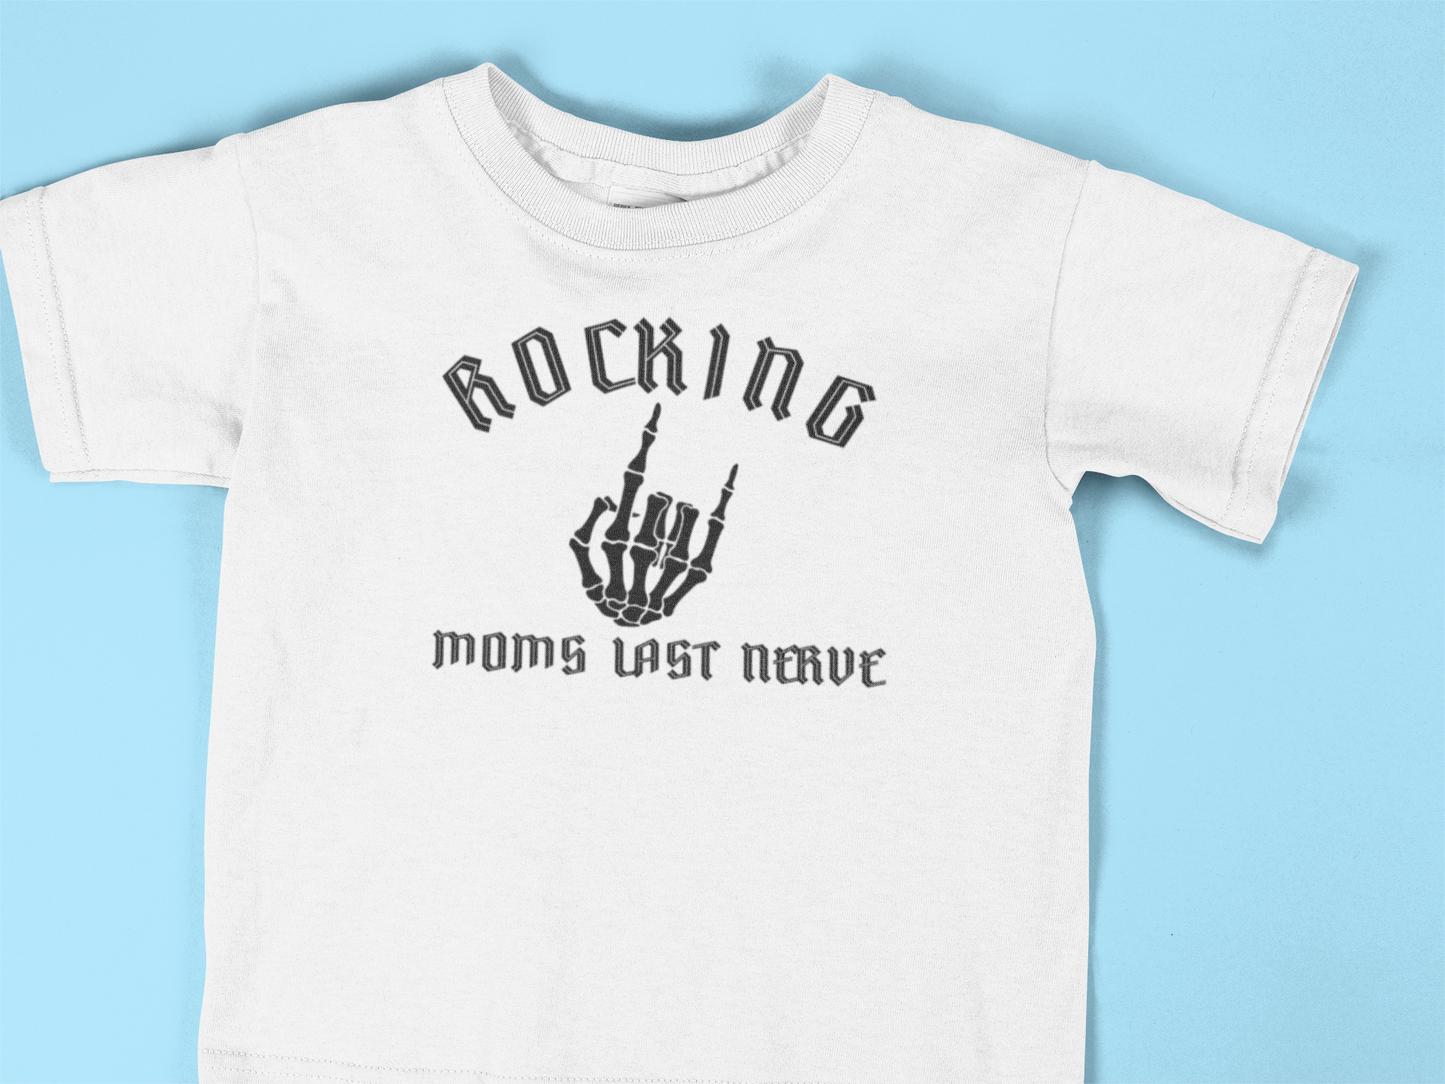 Rocking Moms Last Nerve Logo